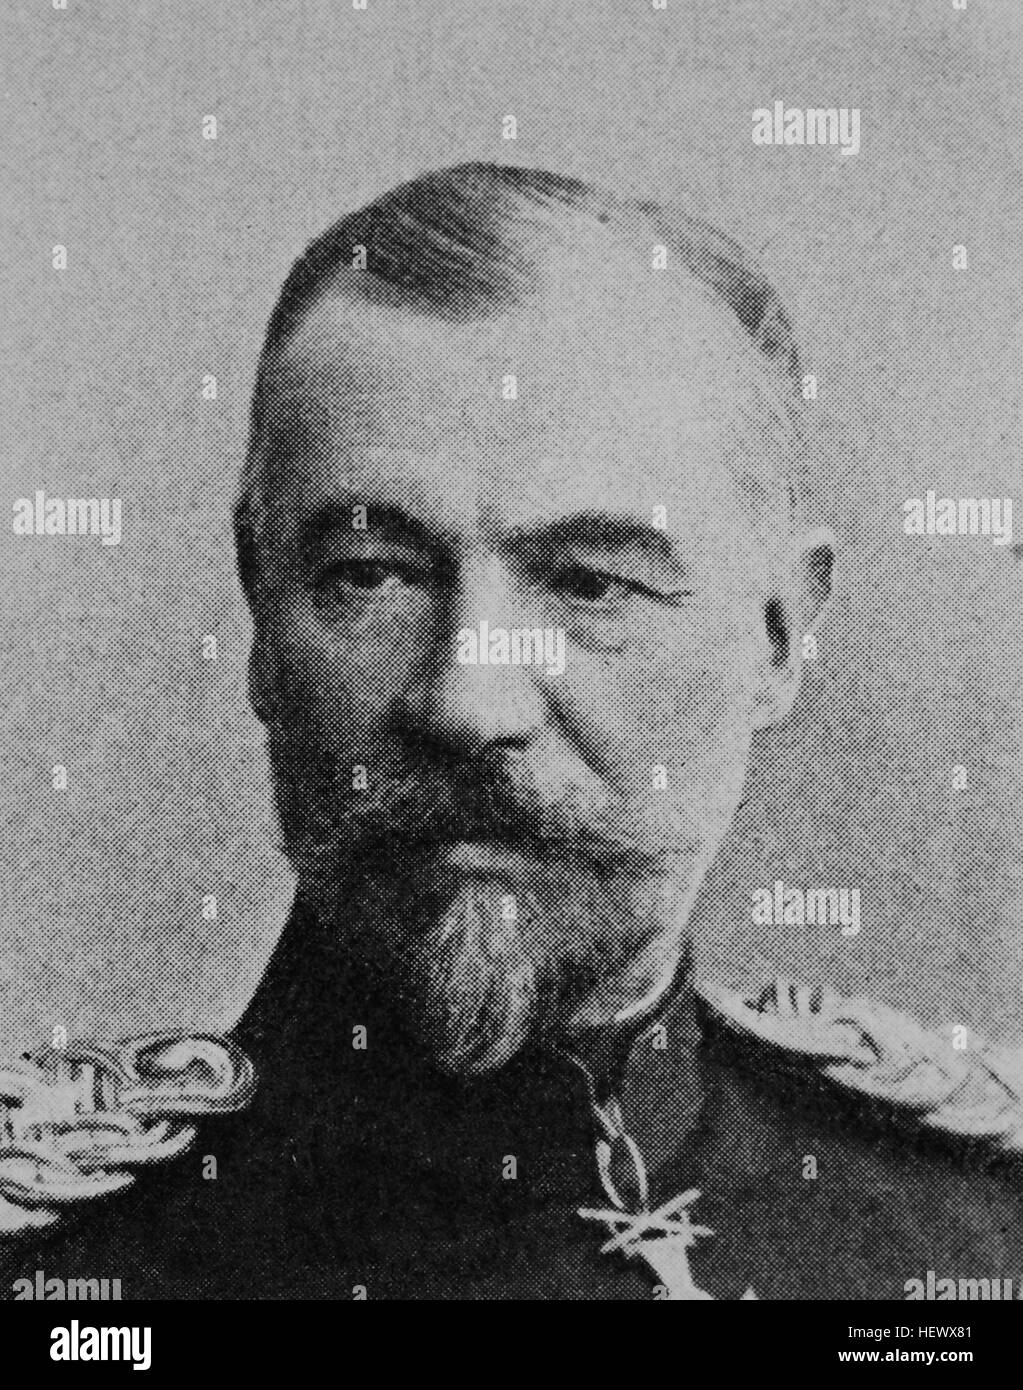 Friedrich, Fritz, Bronsart von Schellendorf, 1864-1950, war ein deutscher Offizier und Politiker, Bild aus dem Jahr 1895, Digital verbessert Stockfoto